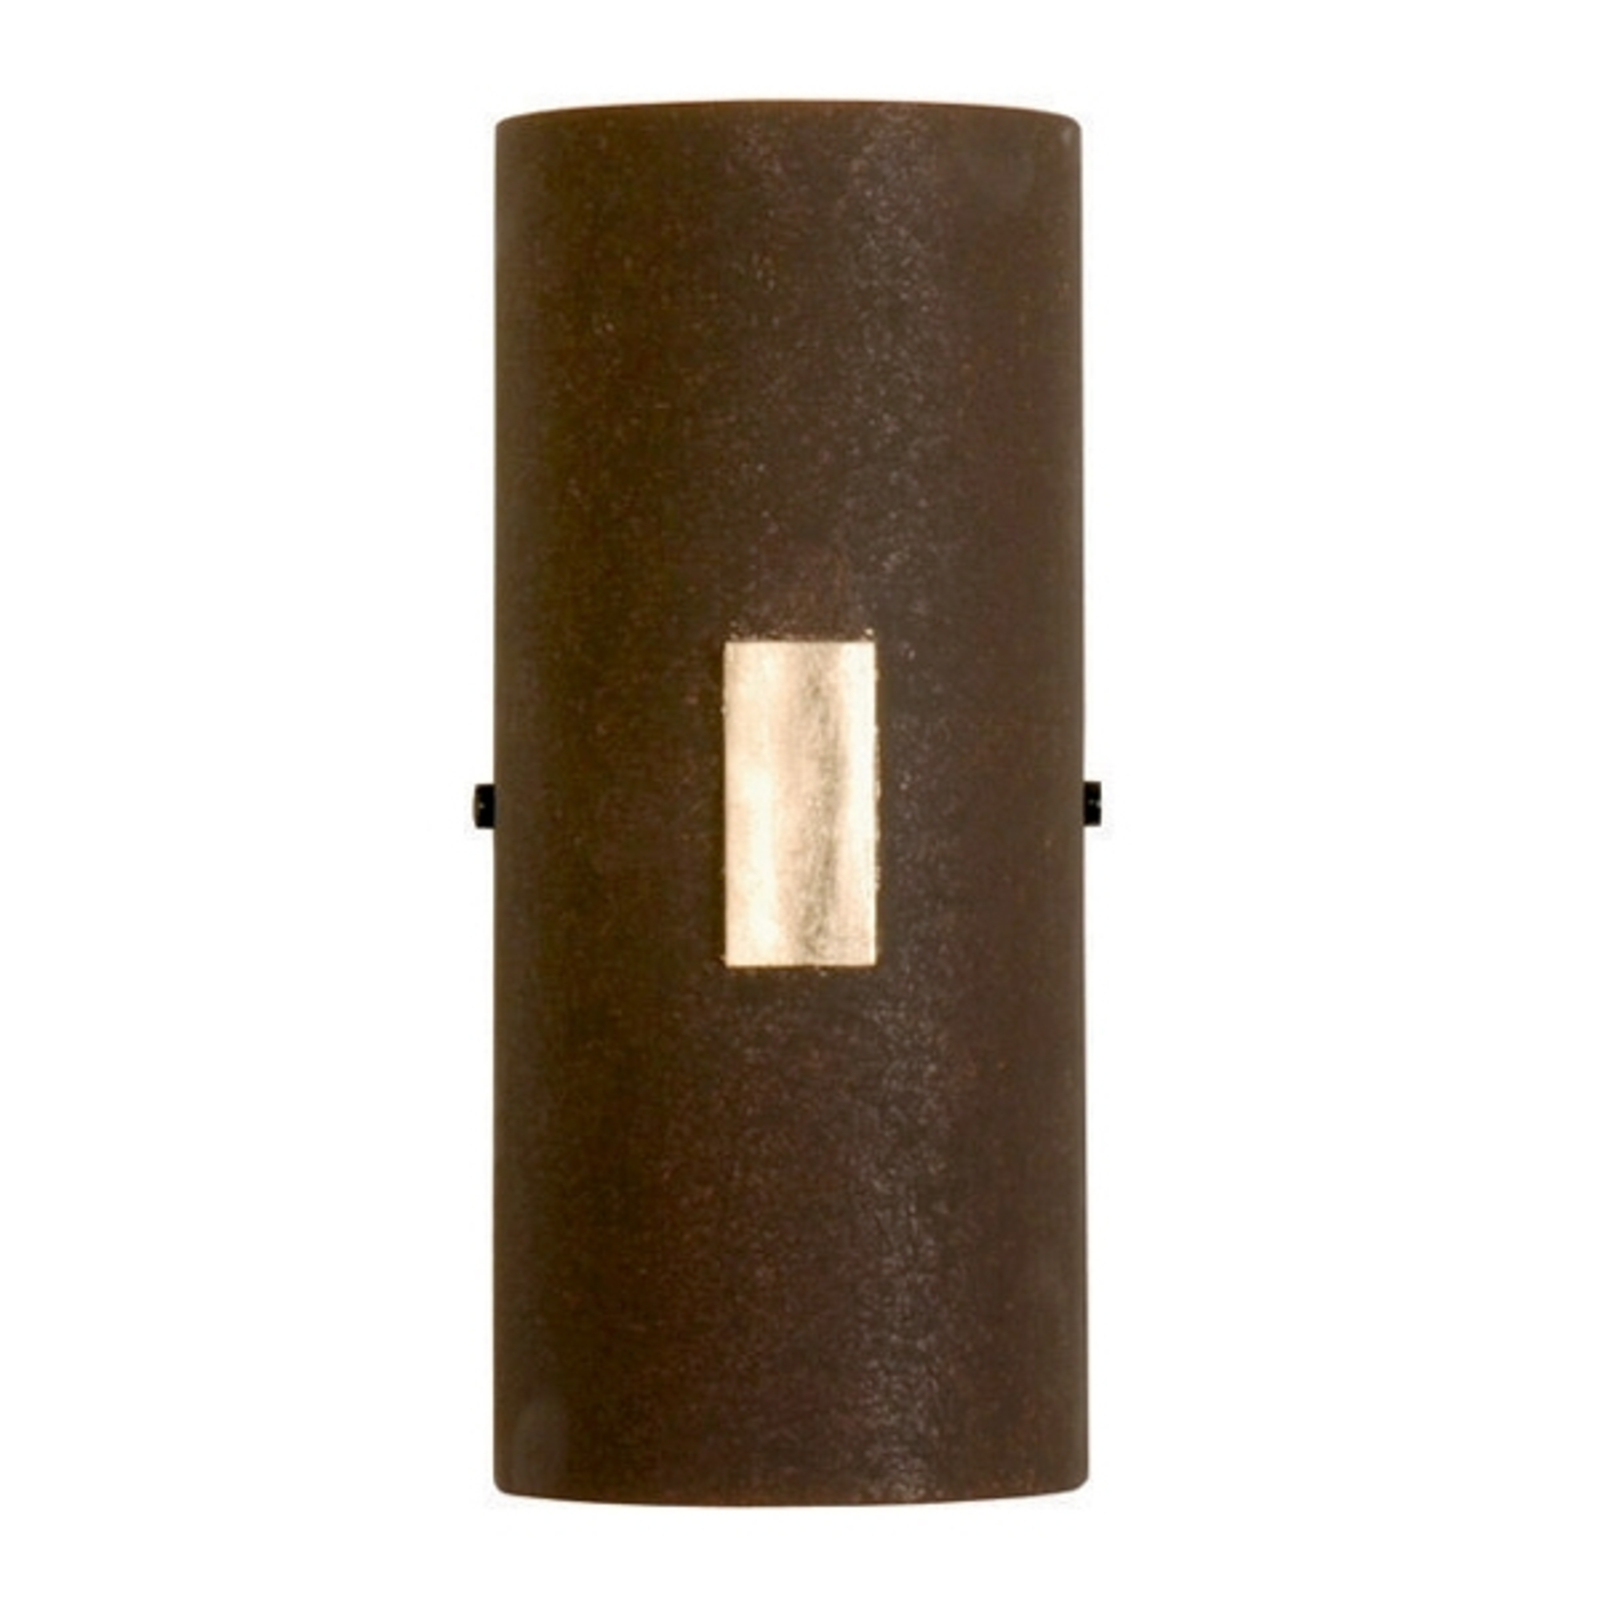 Menzel Solo zidna svjetiljka u hrđi sa zlatnim listićima